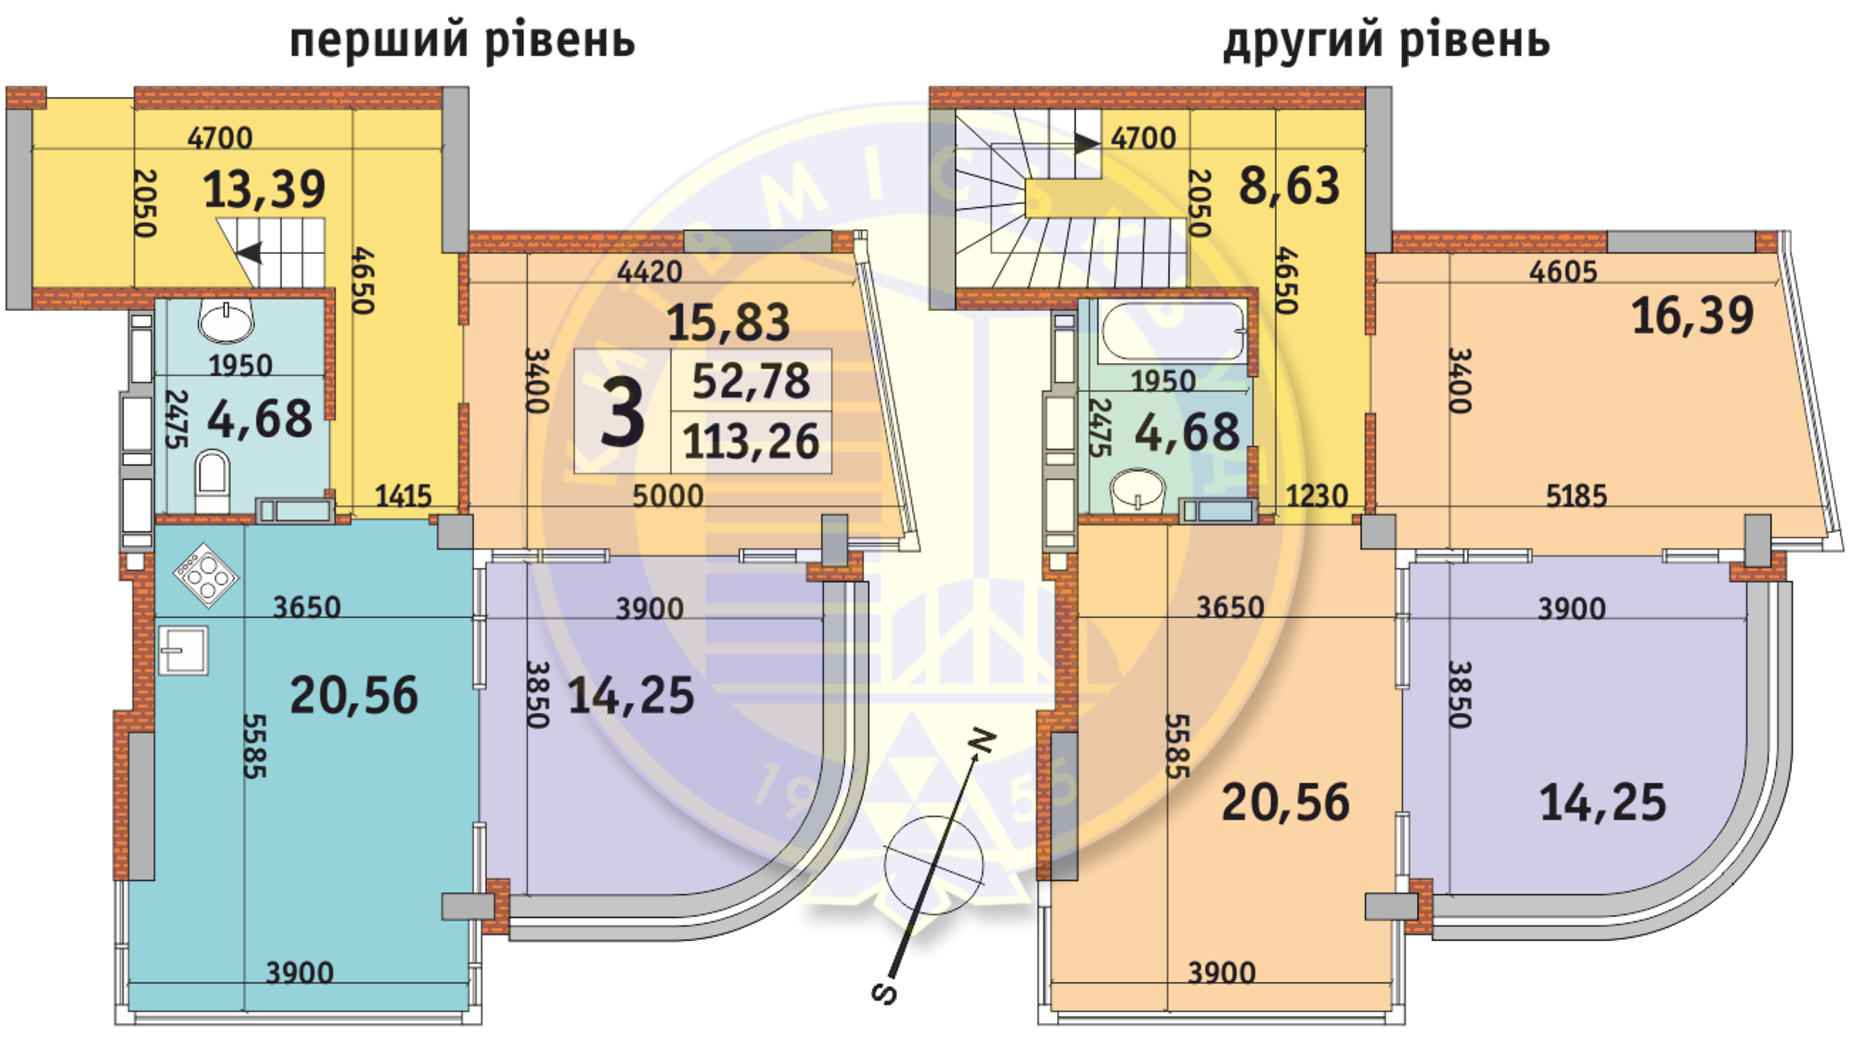 Планировка много­уровневой квартиры в ЖК Урловский-2 113.26 м², фото 332845